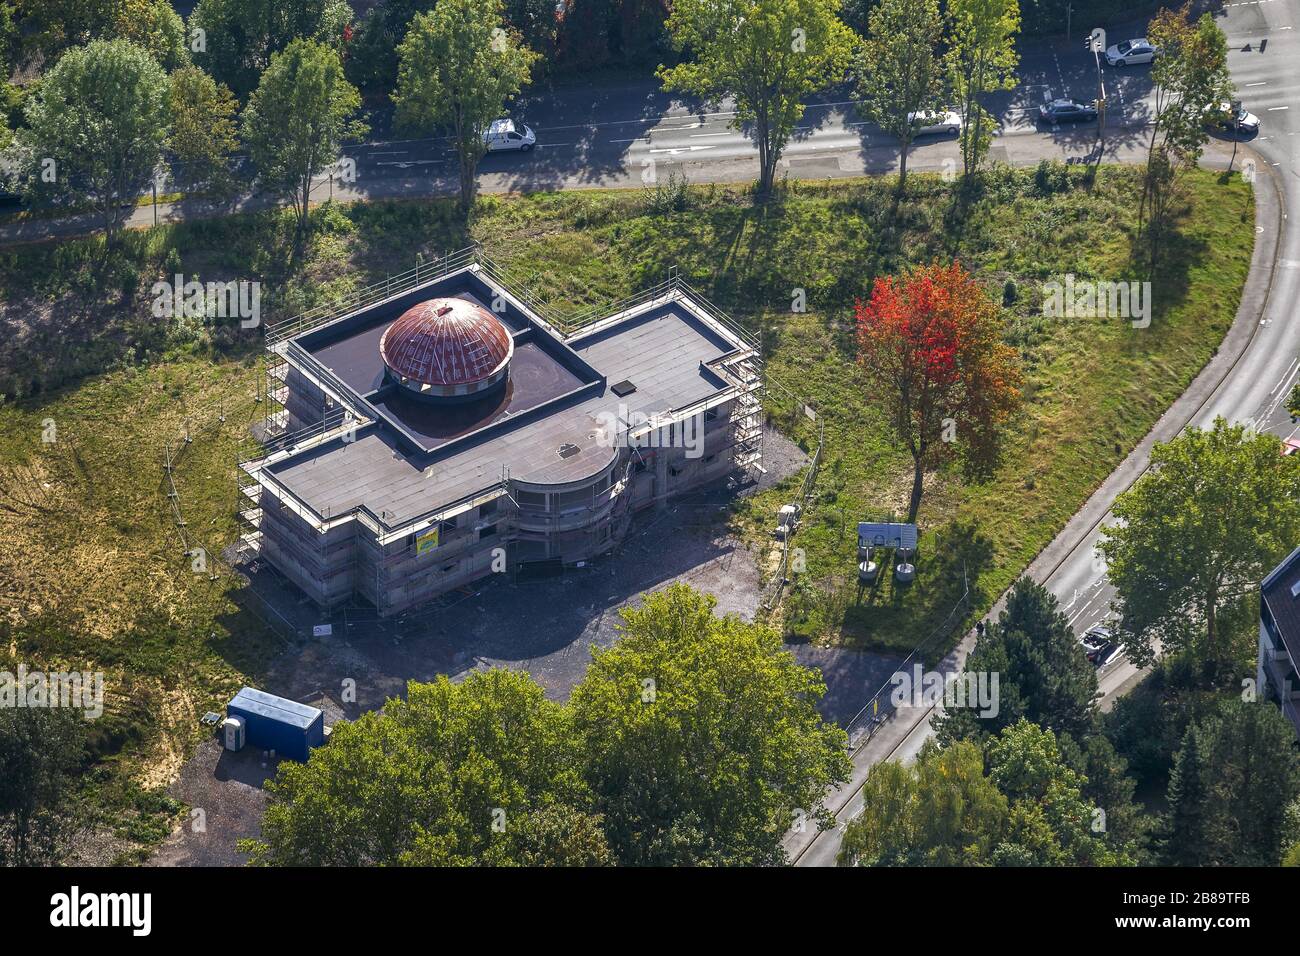 , Nouvelle mosquée Sultan Ahmet dans le quartier Hoerde, 02.10.2013, vue aérienne, Allemagne, Rhénanie-du-Nord-Westphalie, région de la Ruhr, Dortmund Banque D'Images